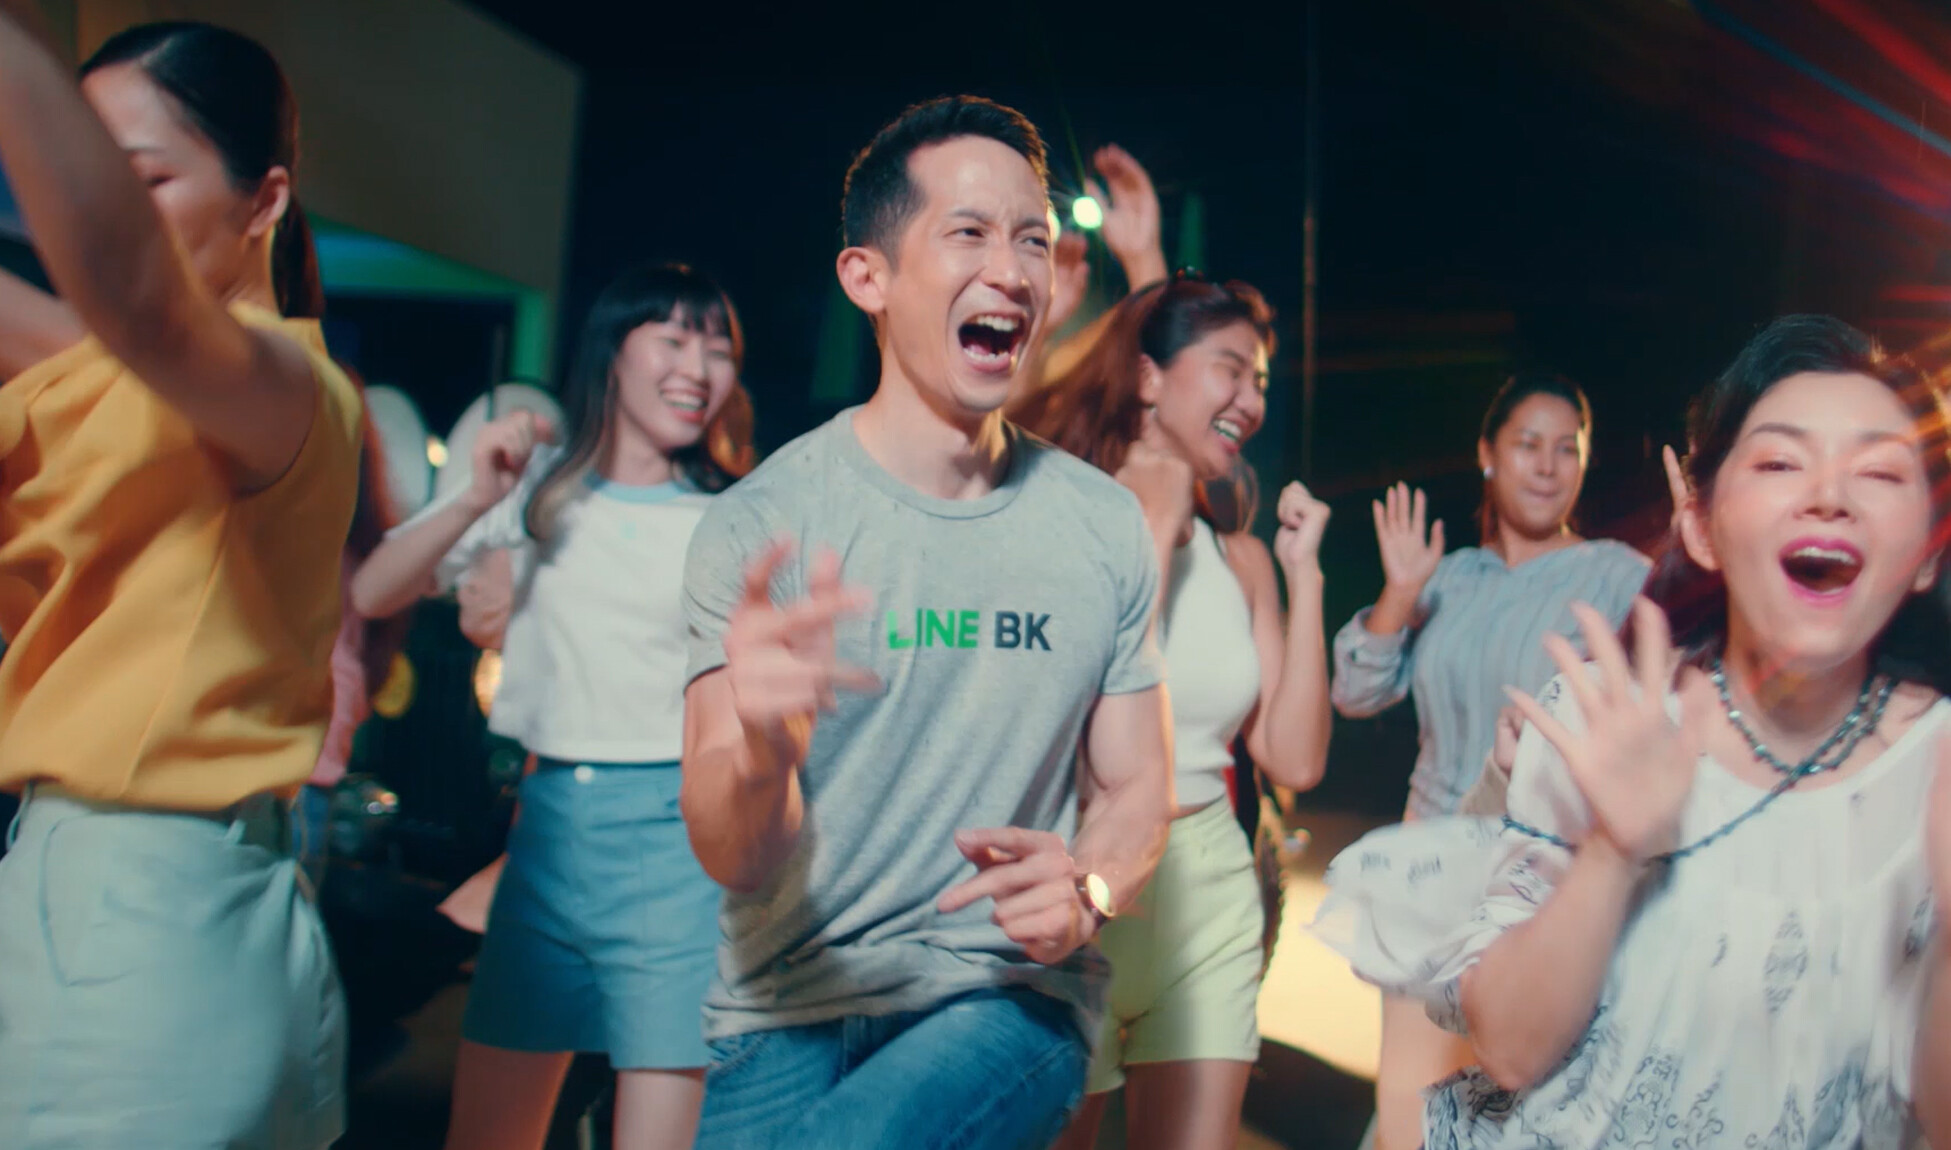 ว้าว! หนักมาก "ธนา โพธิกำจร" ผู้บริหาร LINE BK โผล่เซอร์ไพรส์ใน MV "ที่พึ่งทางไลน์" ของ ใบเตย อาร์สยาม Feat. URBOYTJ